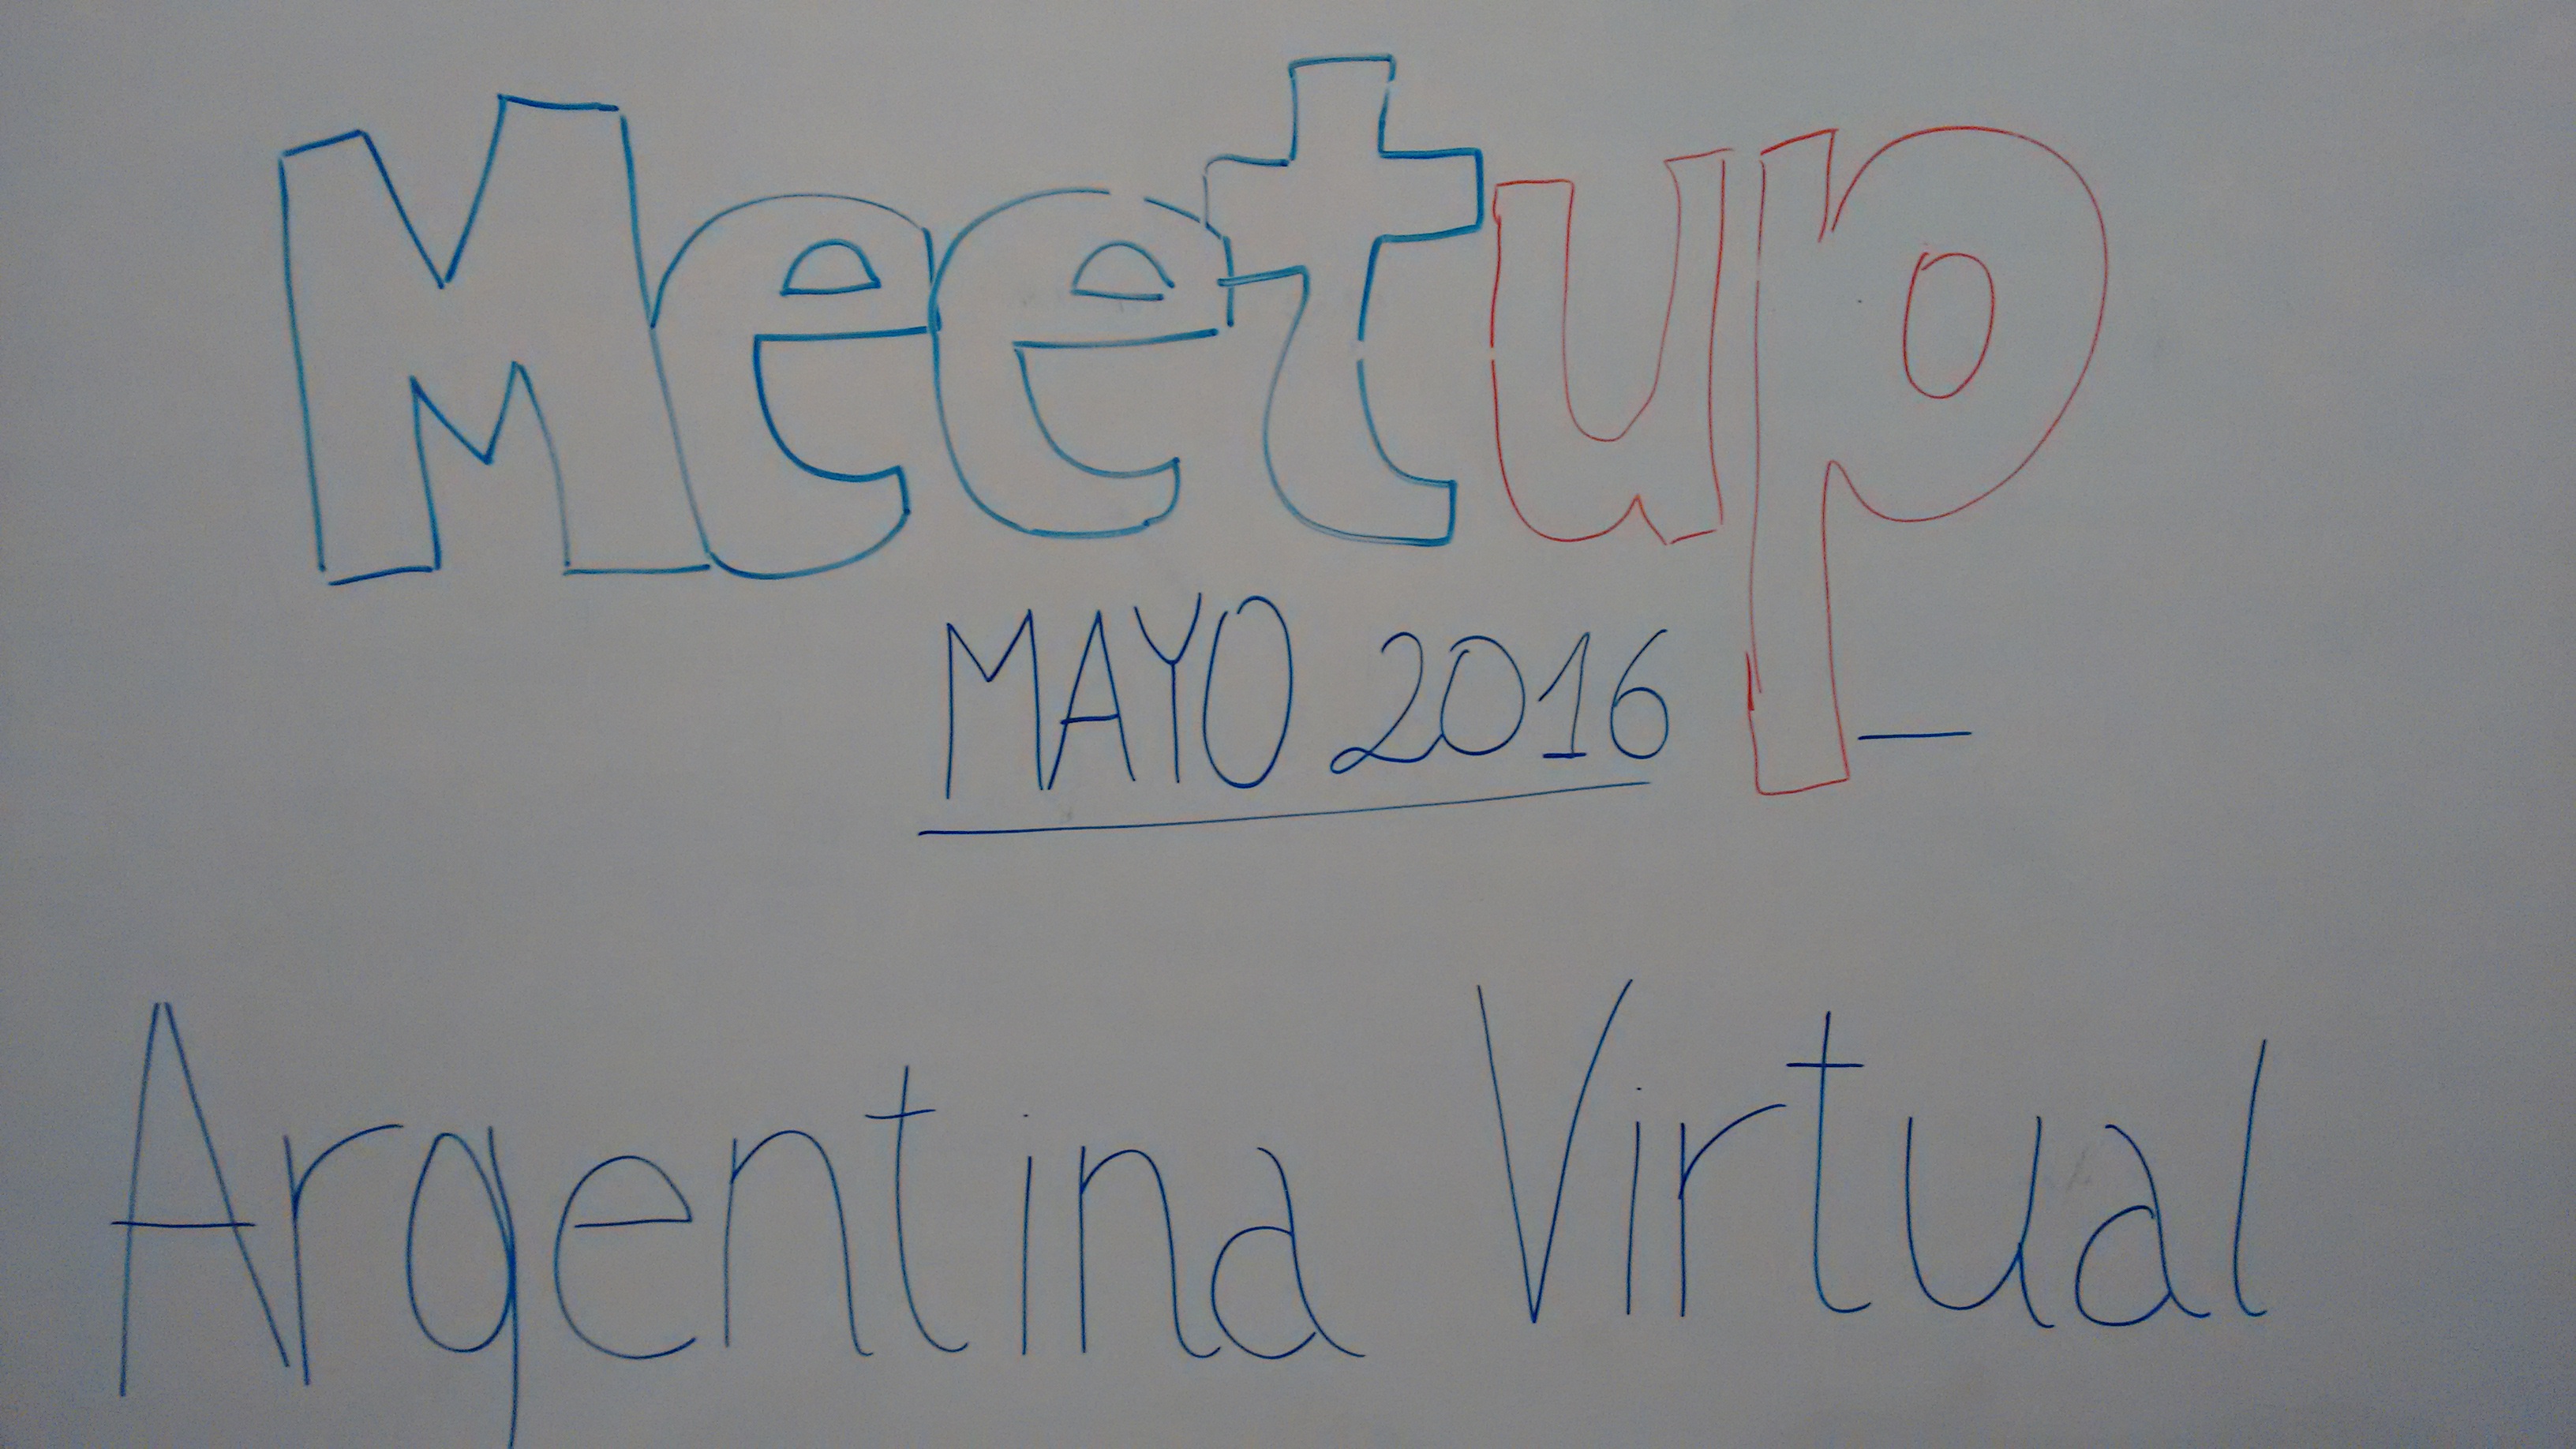 meetup-mayo-argentina-virtual